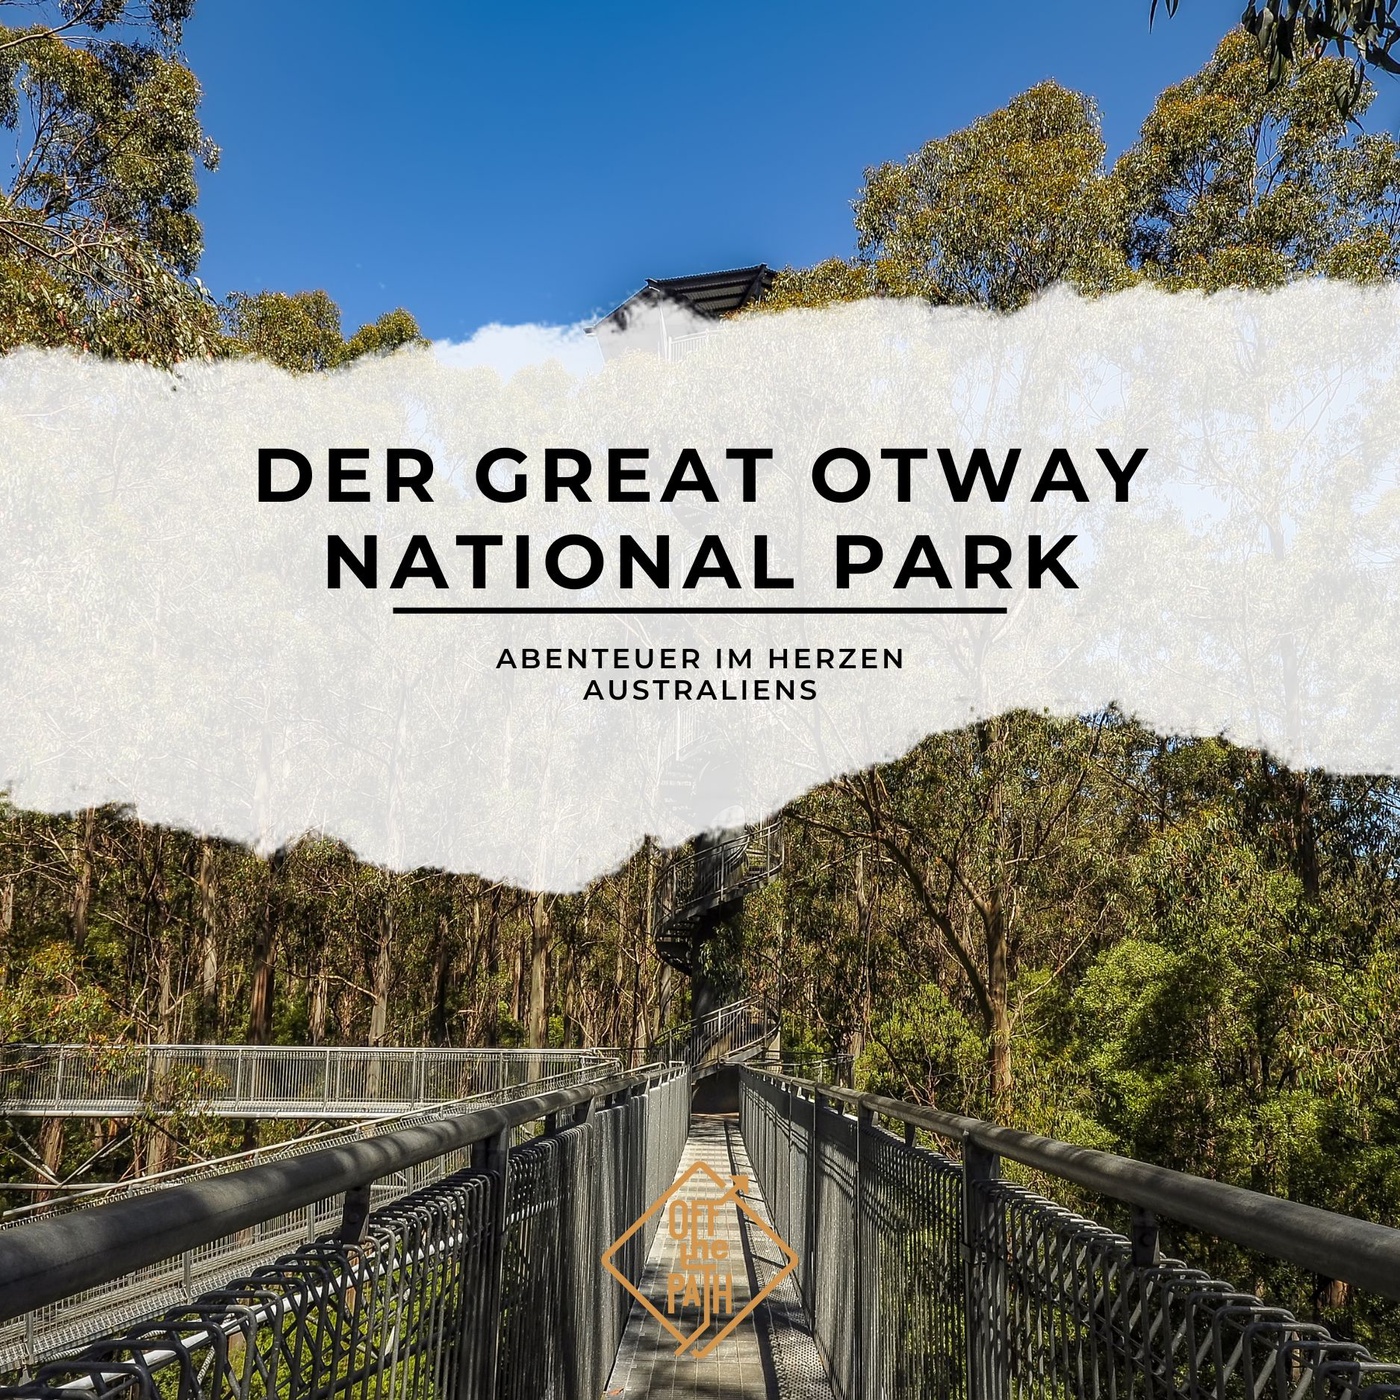 Abenteuer im Herzen Australiens: Der Great Otway National Park